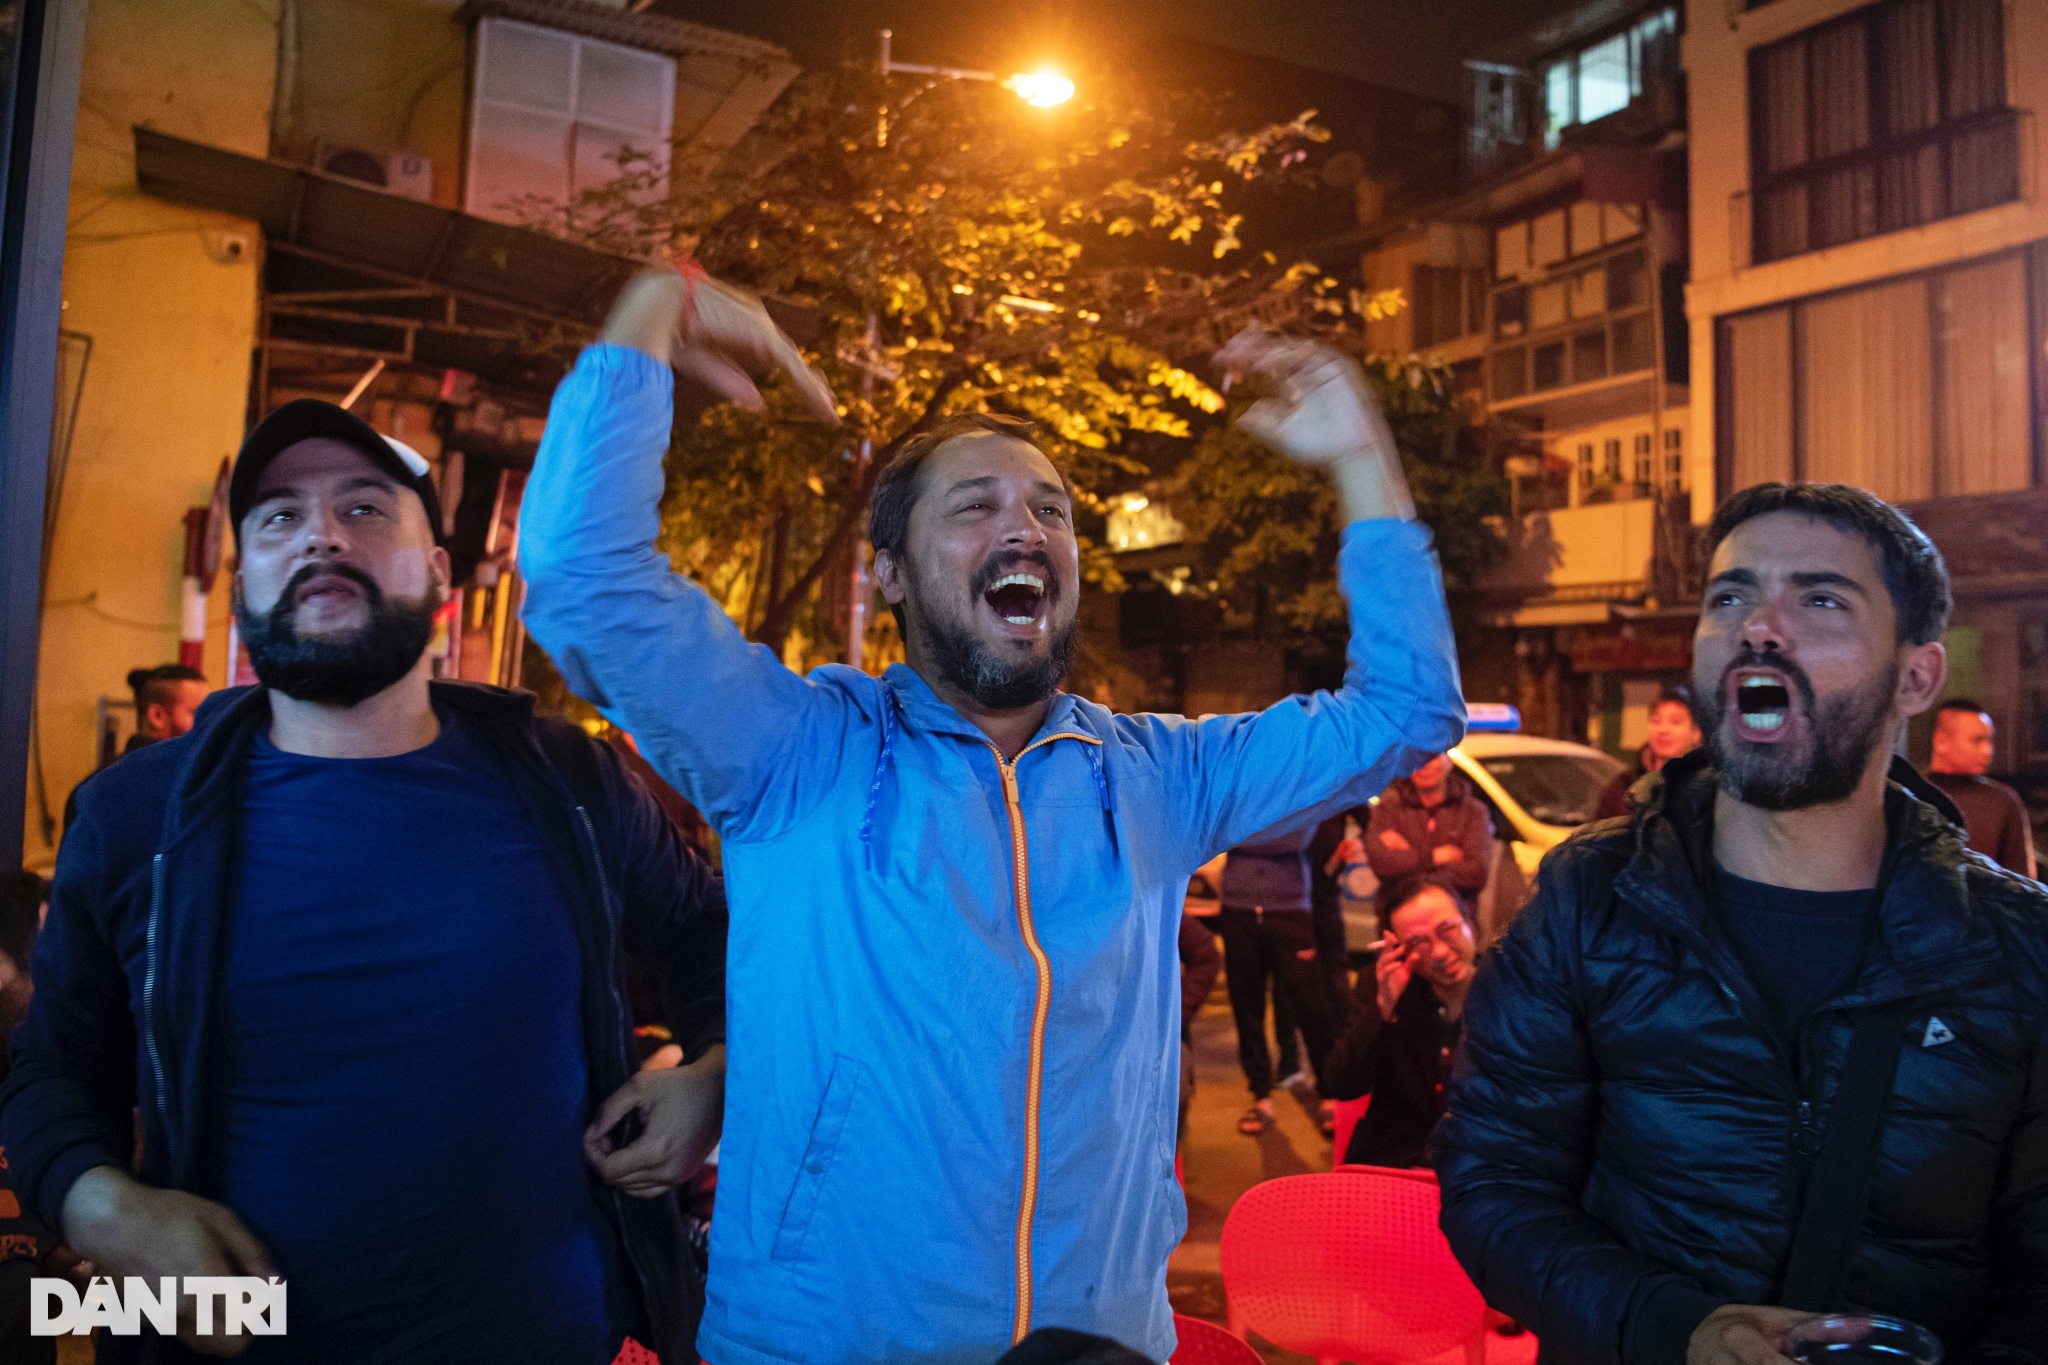 Cổ động viên ăn mừng khắp phố đêm Hà Nội sau chiến thắng của Argentina - 11